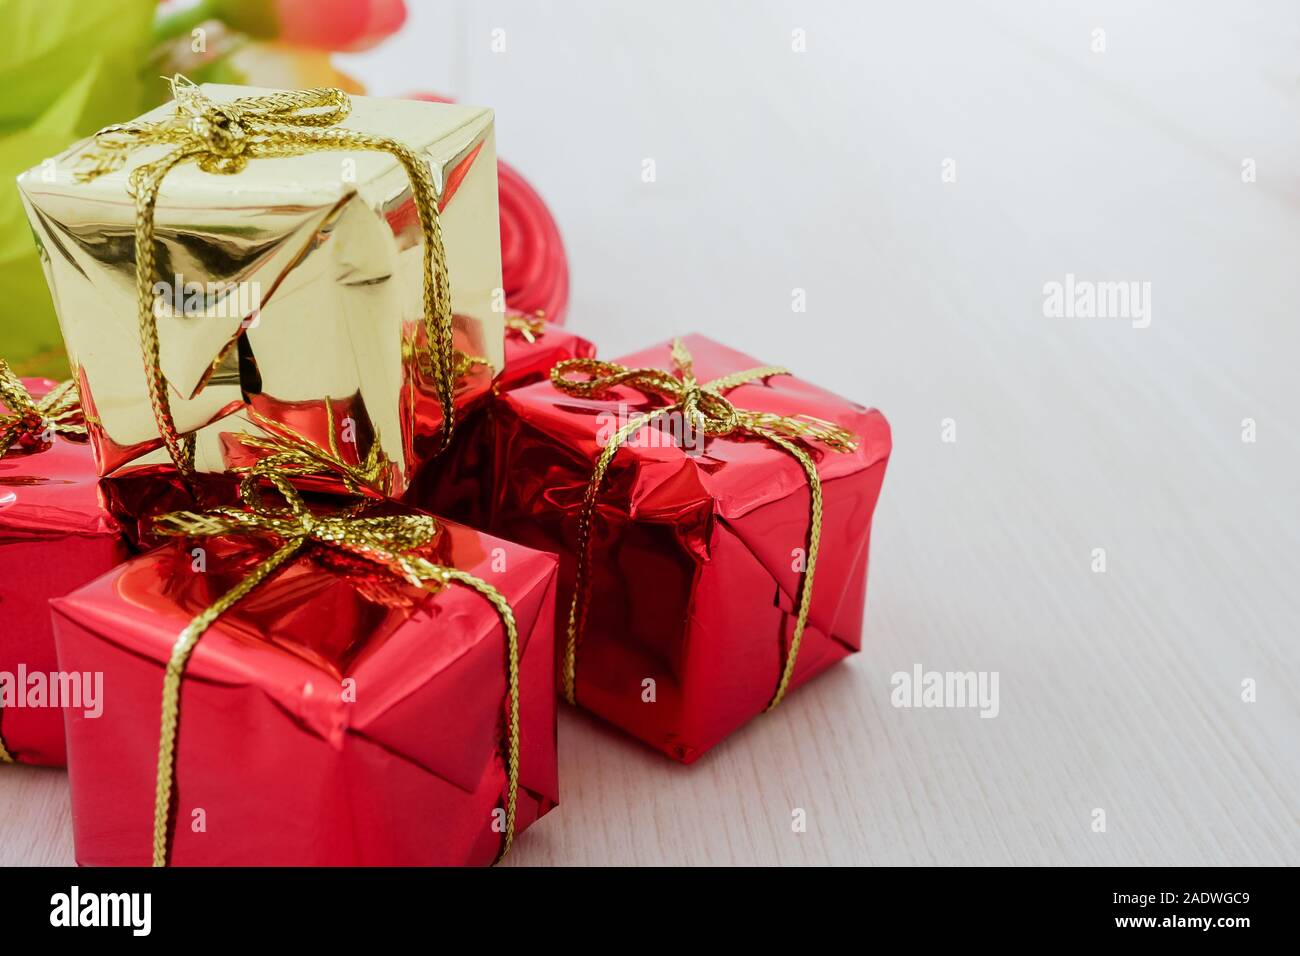 Little Red confezione regalo su decorativi in legno bianco sullo sfondo della tabella Foto Stock